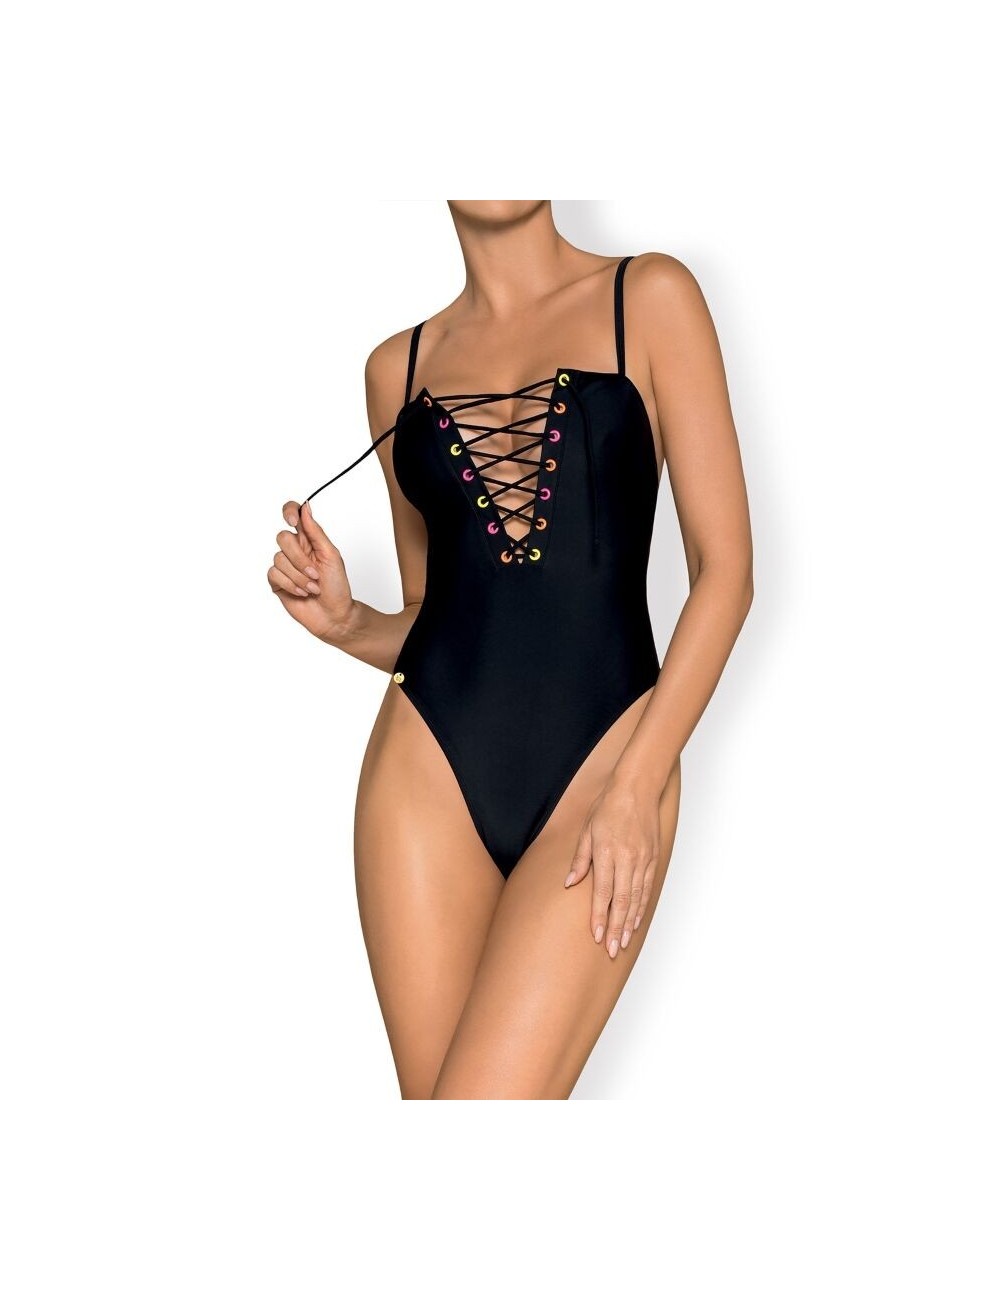 Lingerie - Maillots de bain et tenues de plage - Obsessive - beverelle baãador negro l - Obsessive Summer